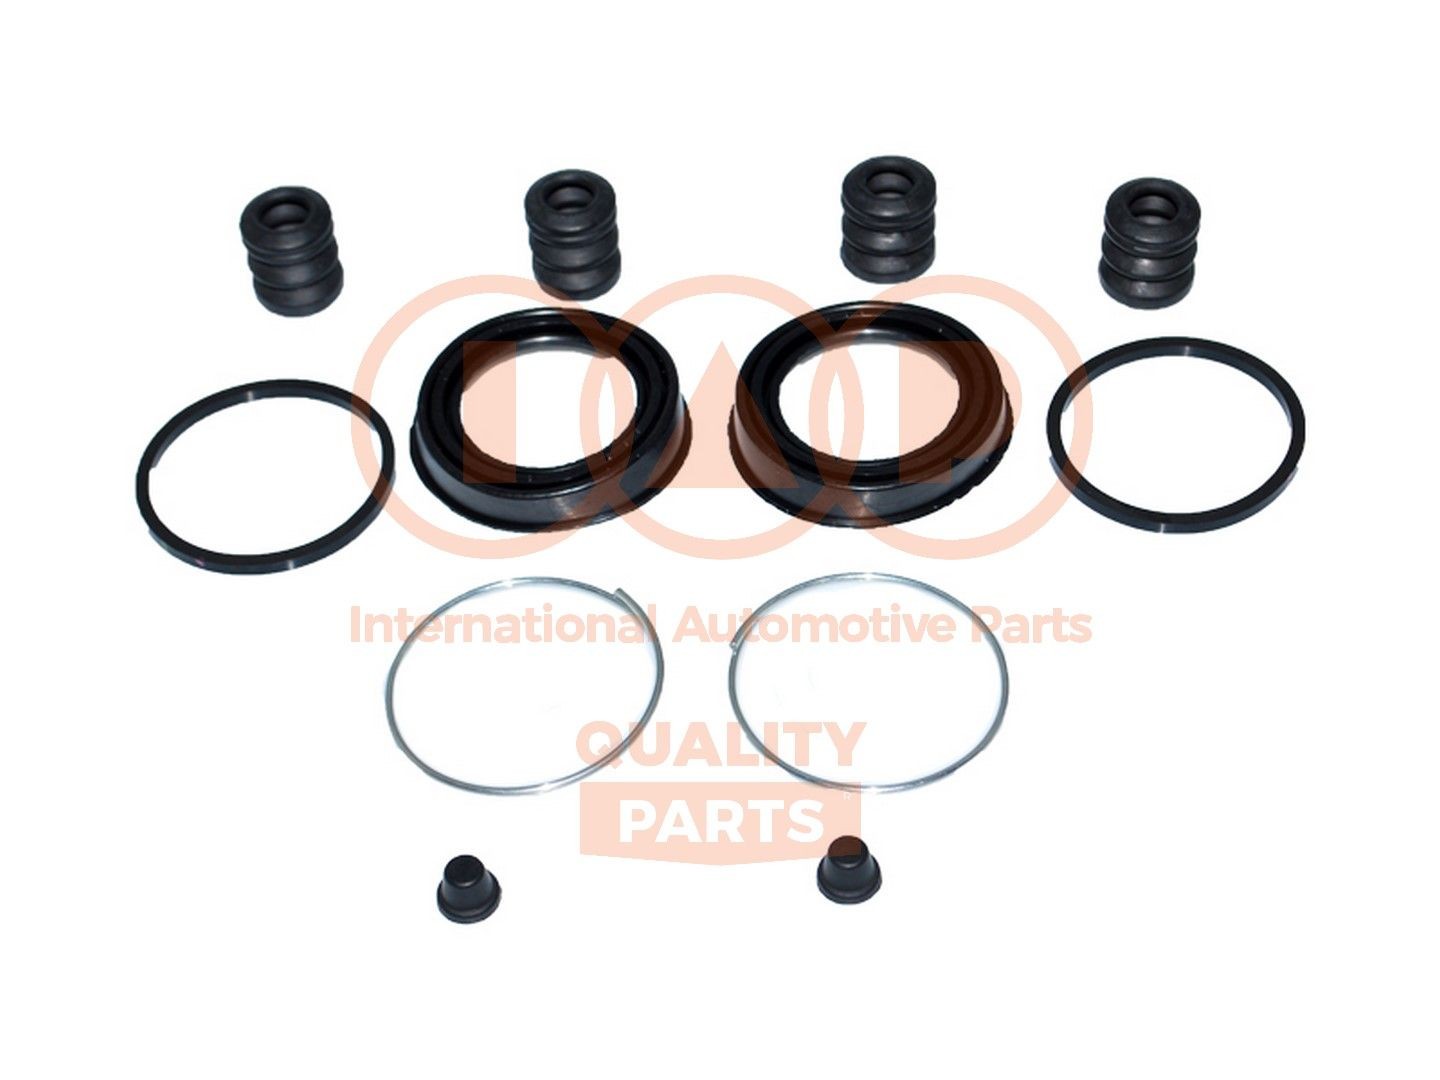 Suzuki GRAND VITARA Brake caliper repair kit 14693272 IAP QUALITY PARTS 706-16040 online buy